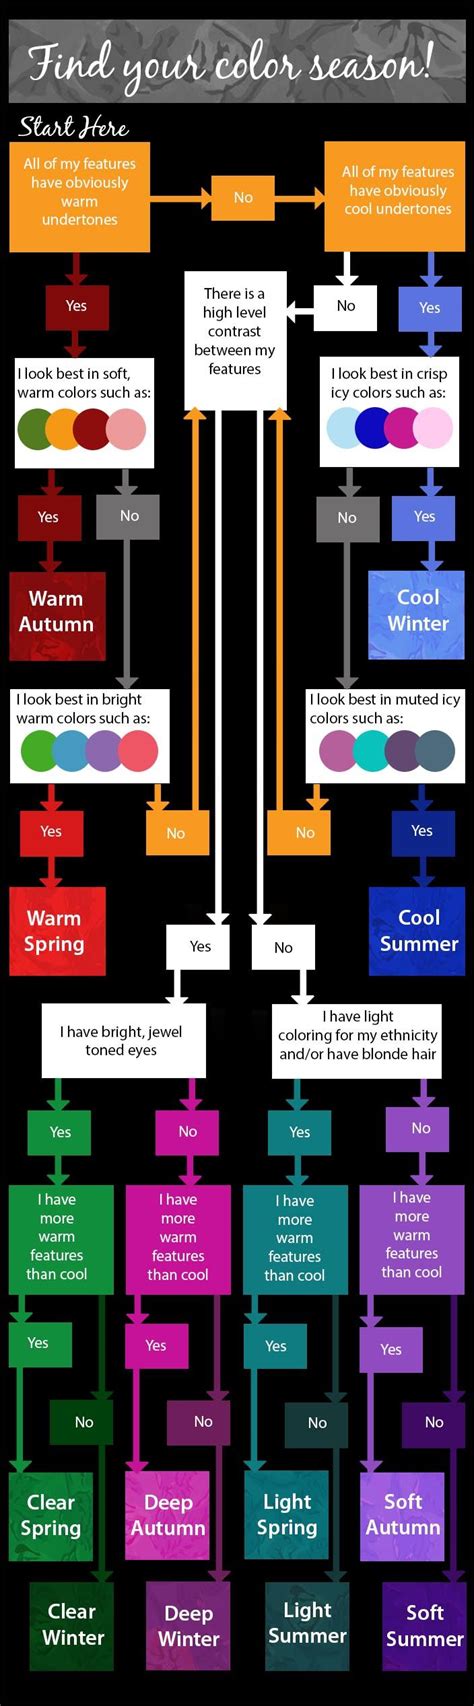 Finding Your Color Season Color Analysis Seasonal Color Analysis